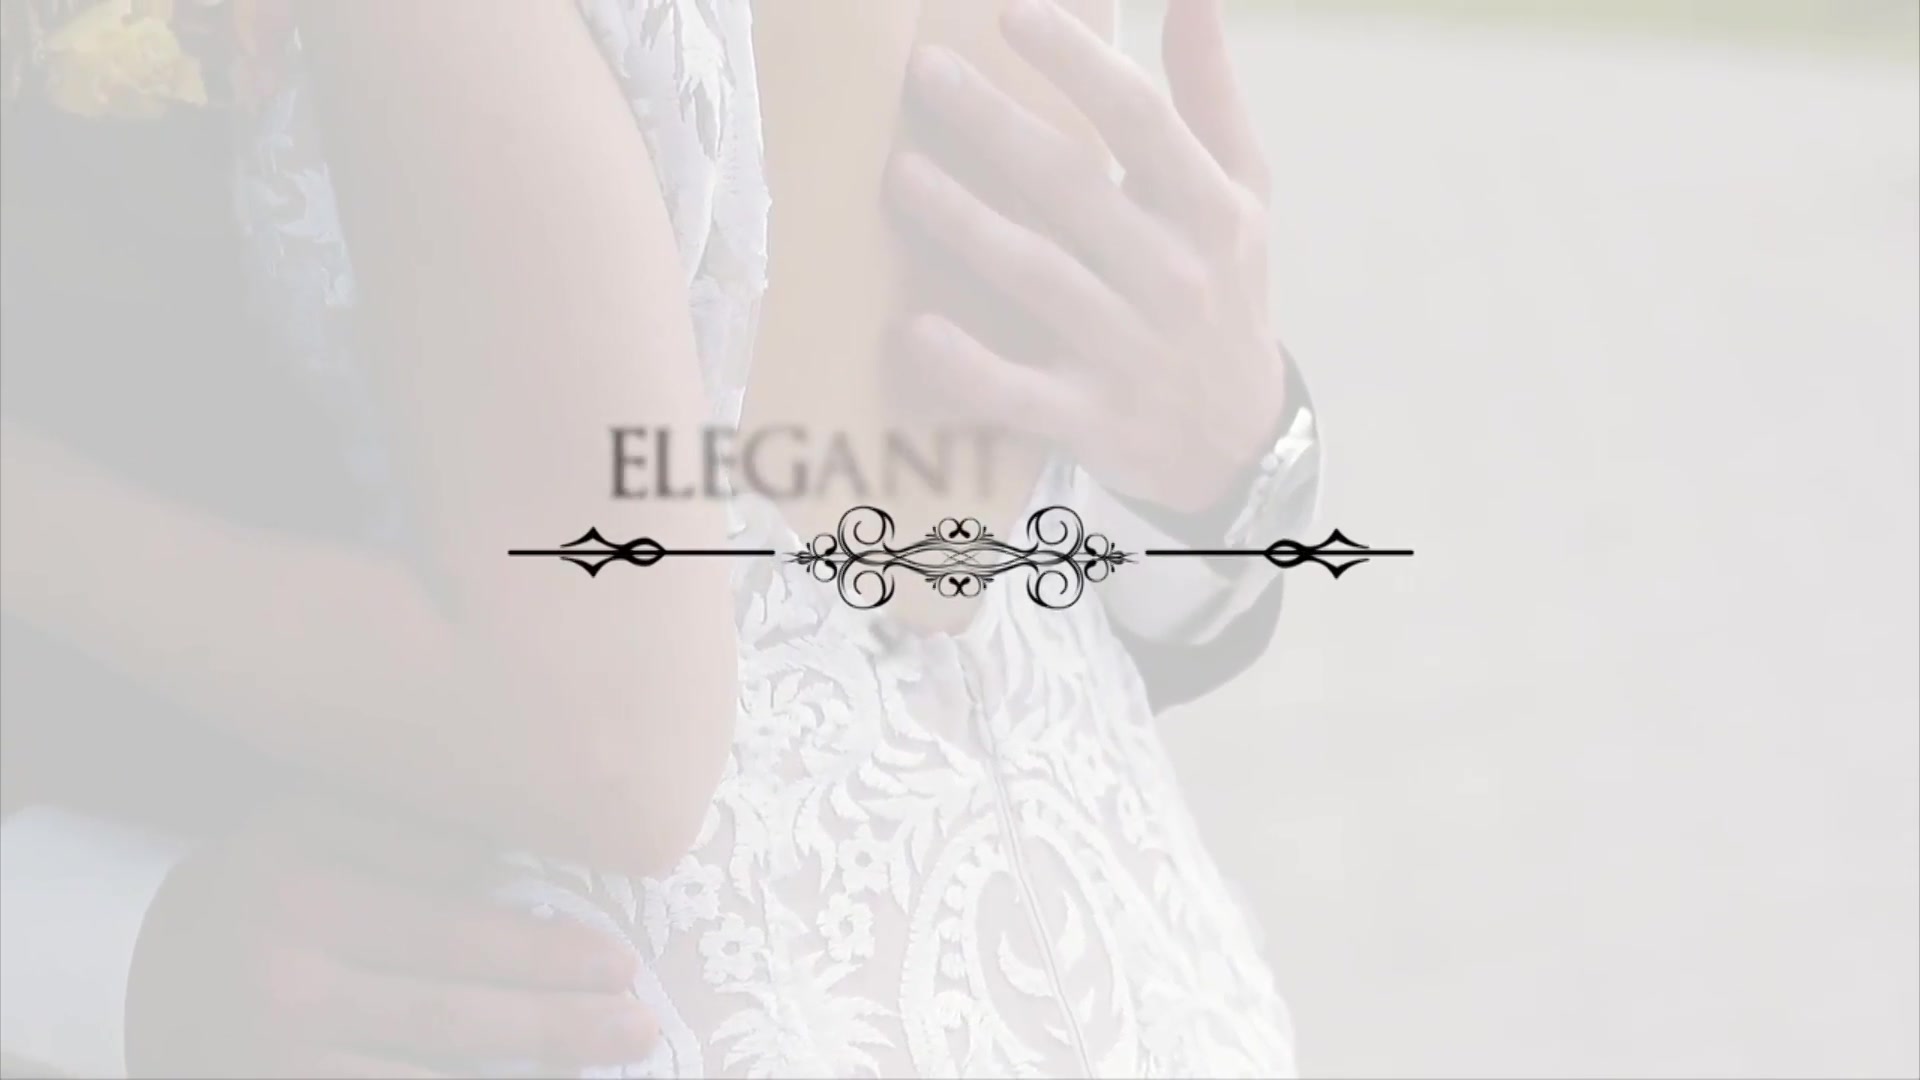 Elegant Titles V2 Videohive 31625584 After Effects Image 11